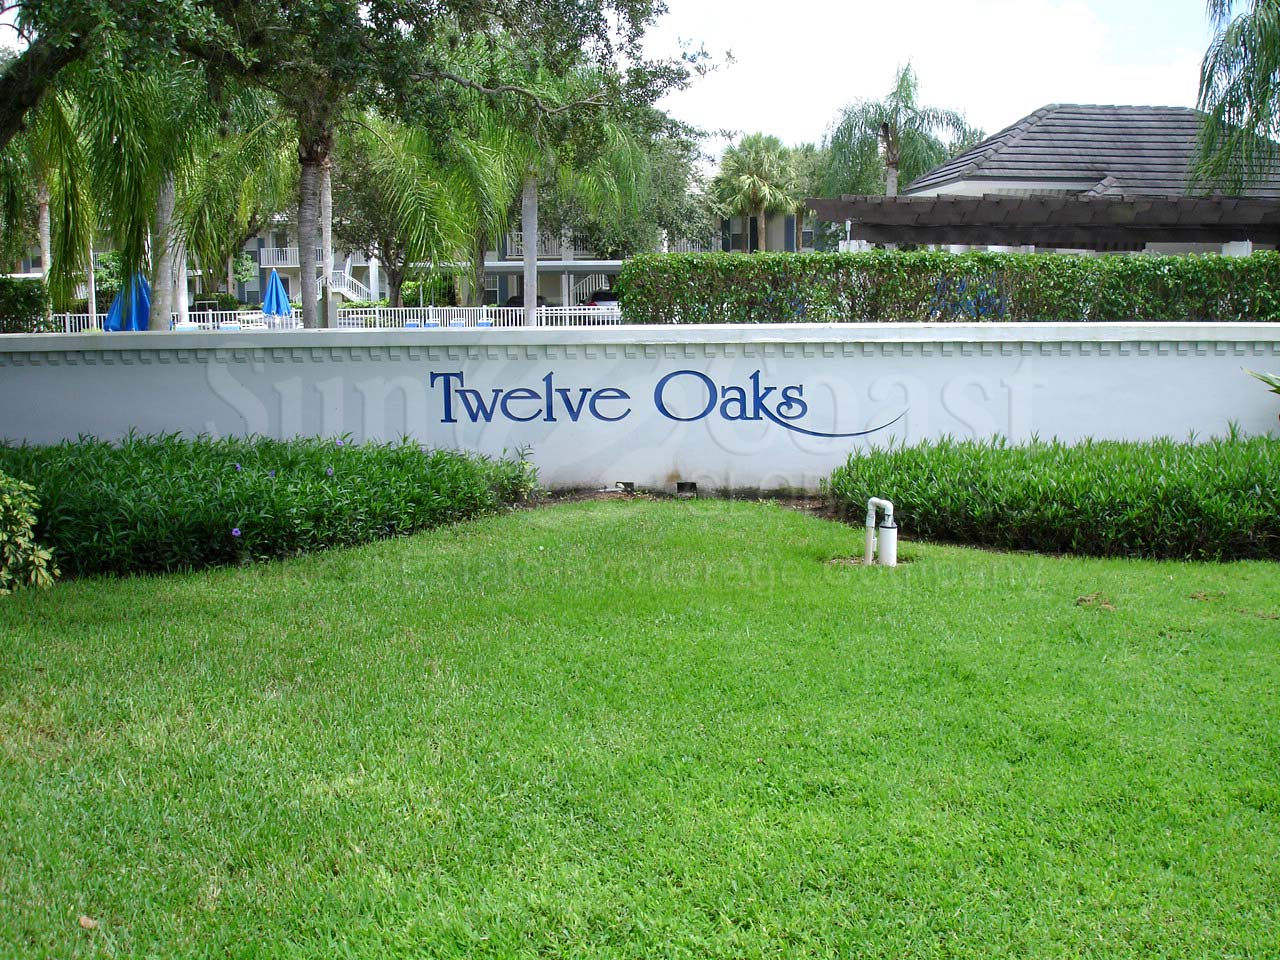 Twelve Oaks signage